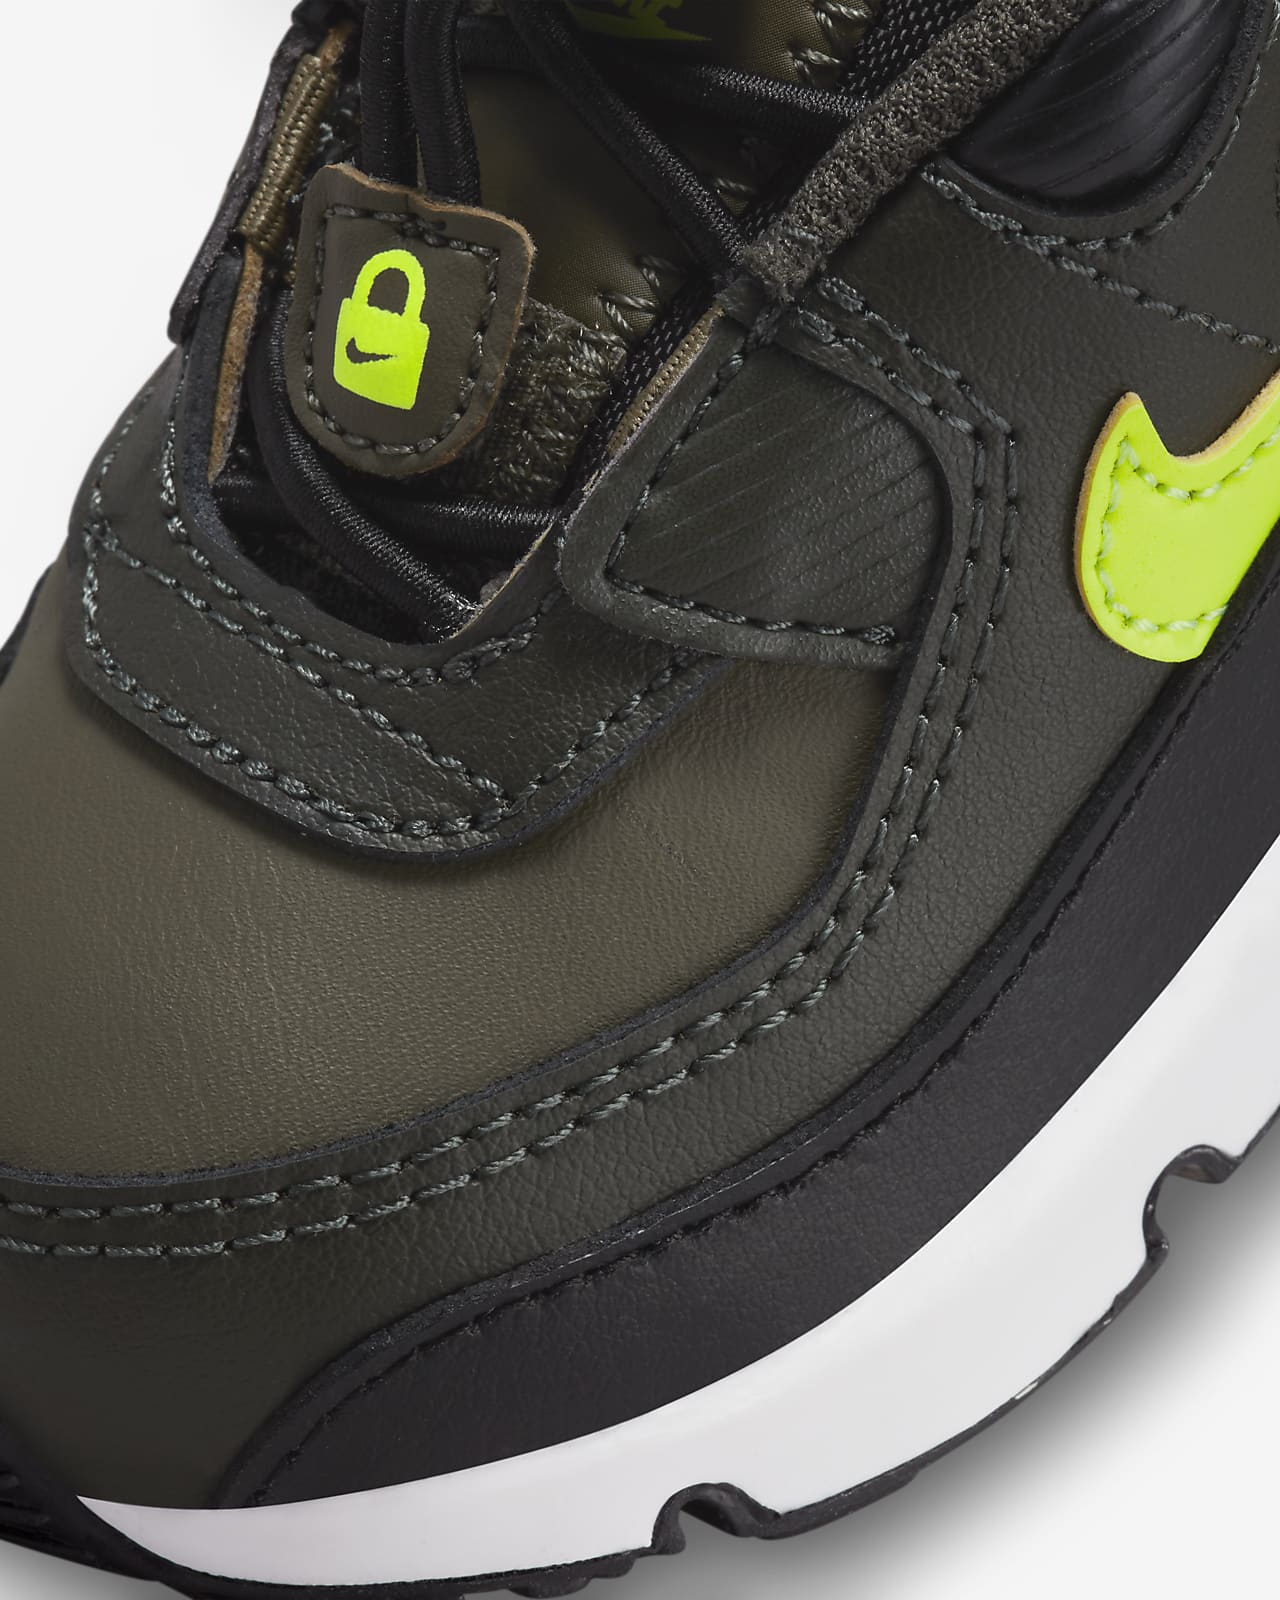 Noord West schrijven zacht Nike Air Max 90 Toggle Schoenen voor baby's/peuters. Nike NL